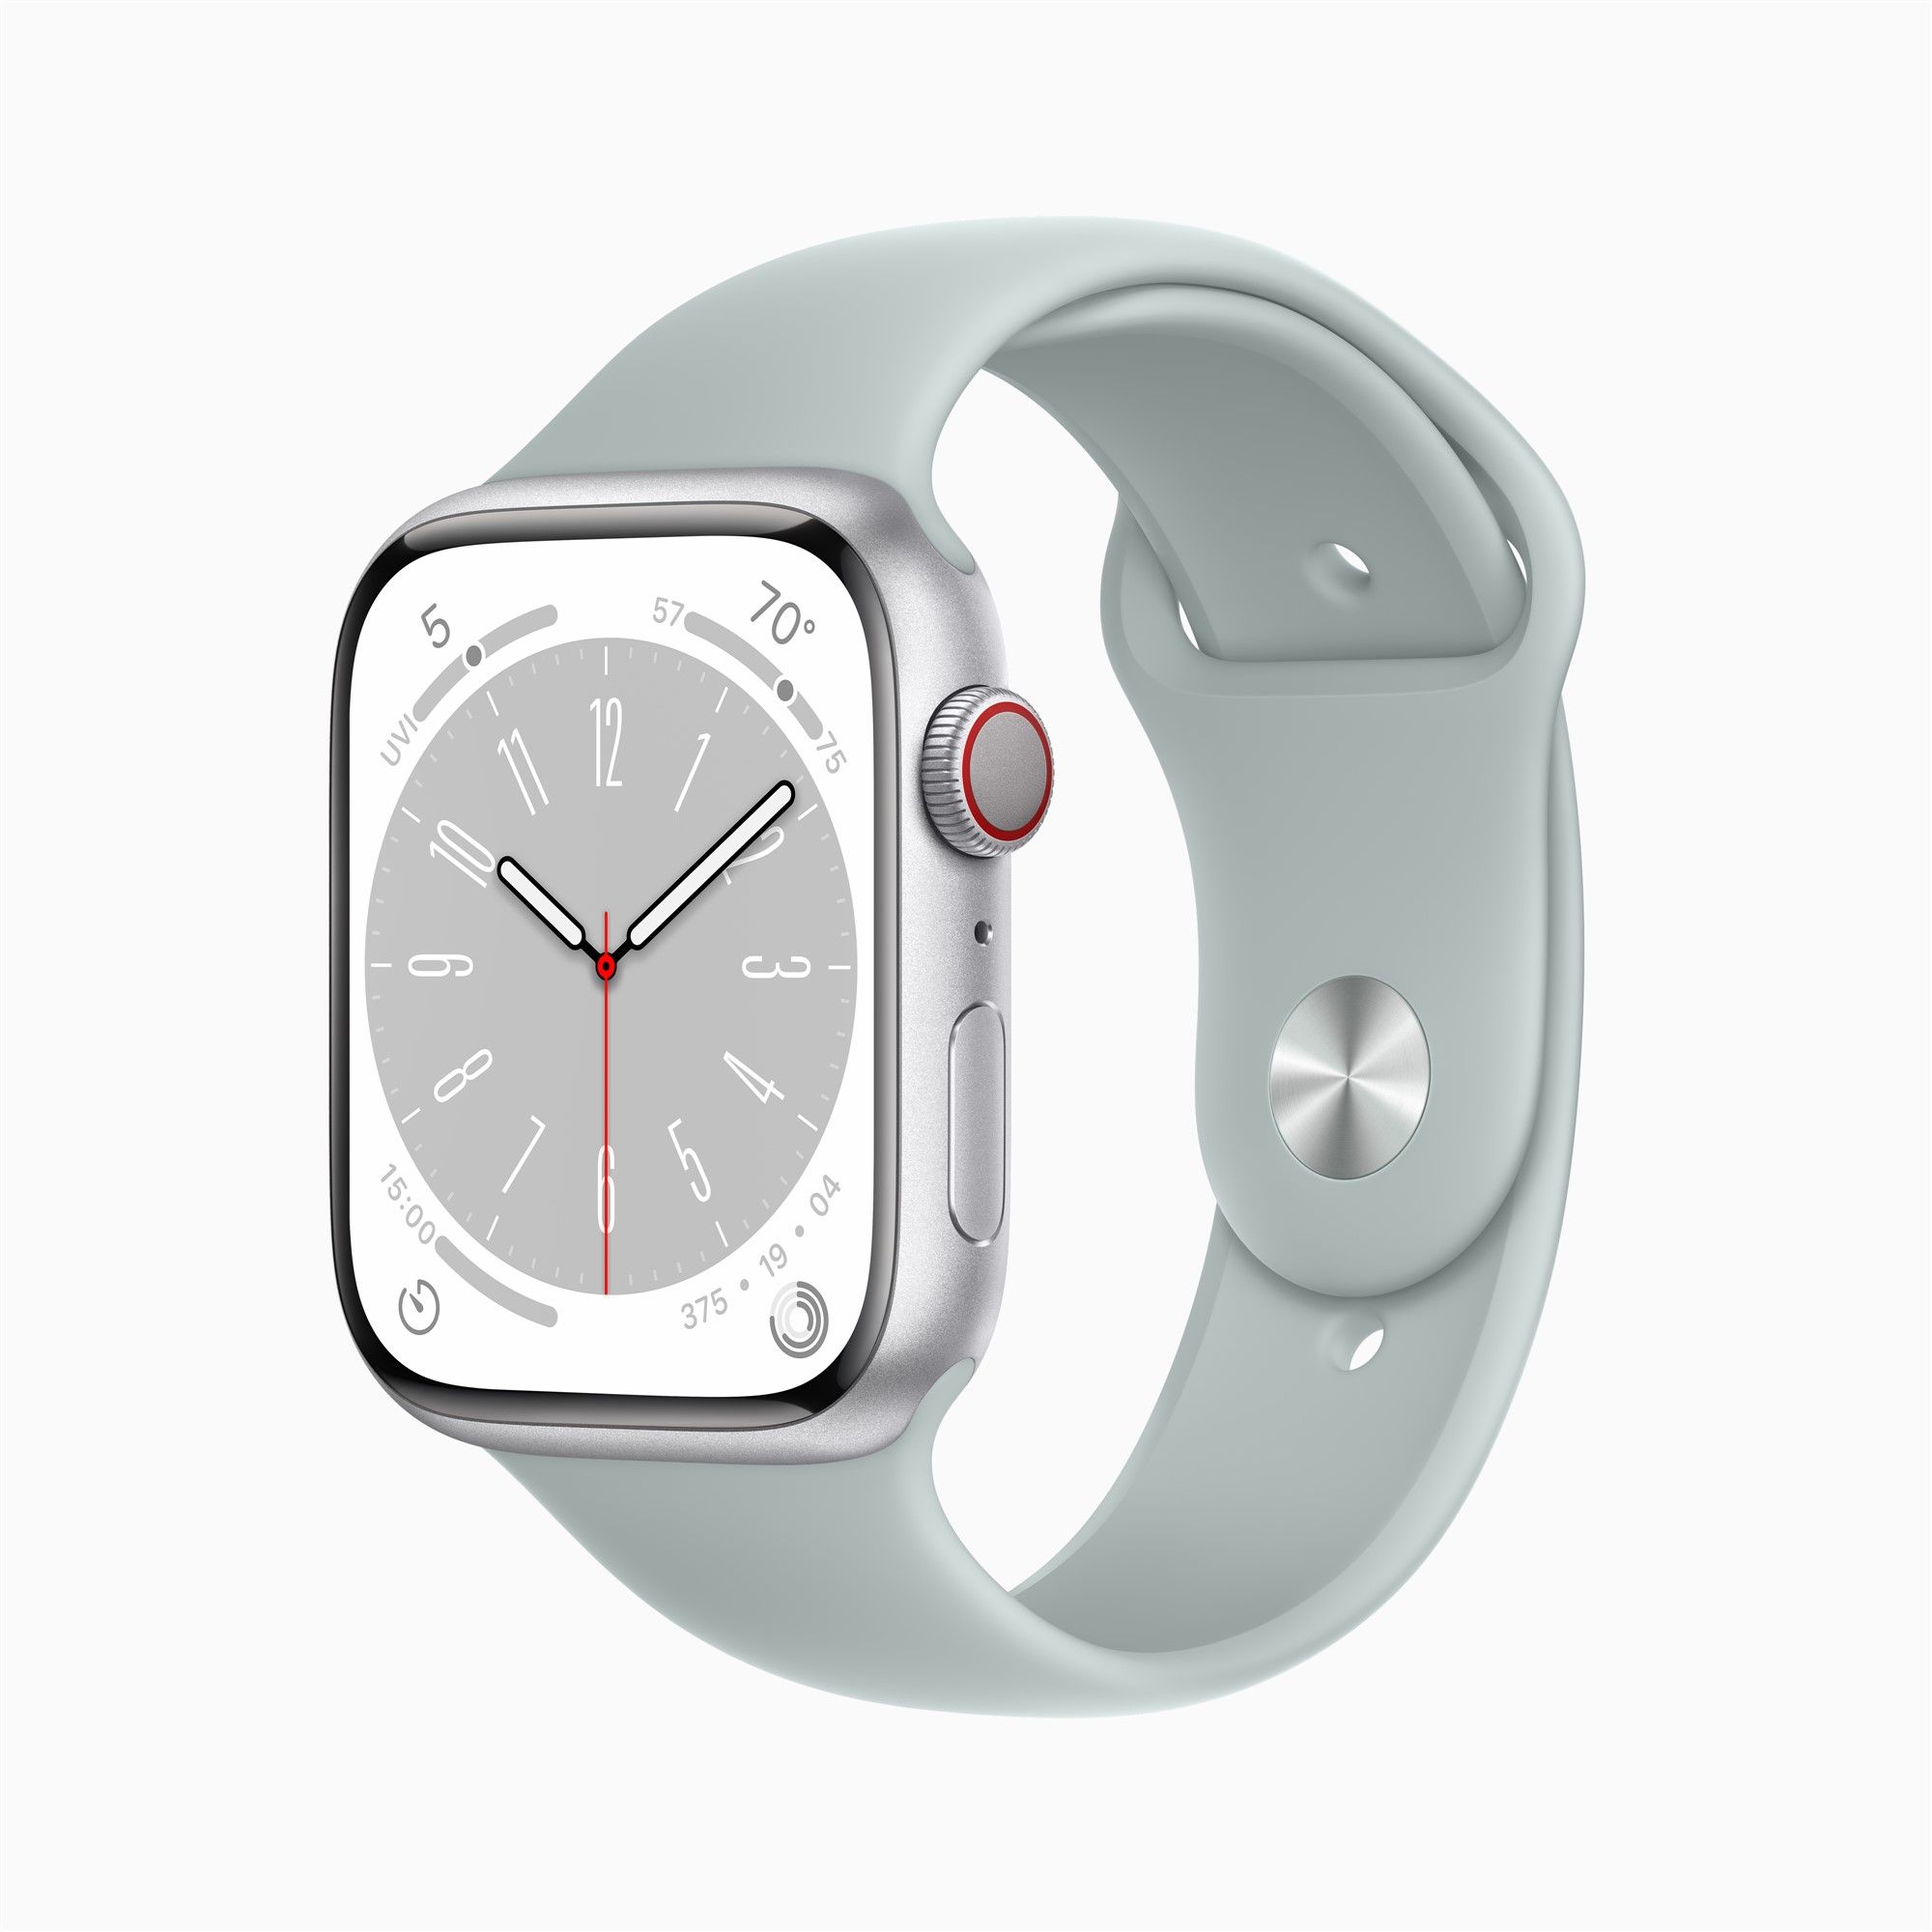 Apple Watch erscheint Generation Pro in in 2. Ultra-Version, Airpods